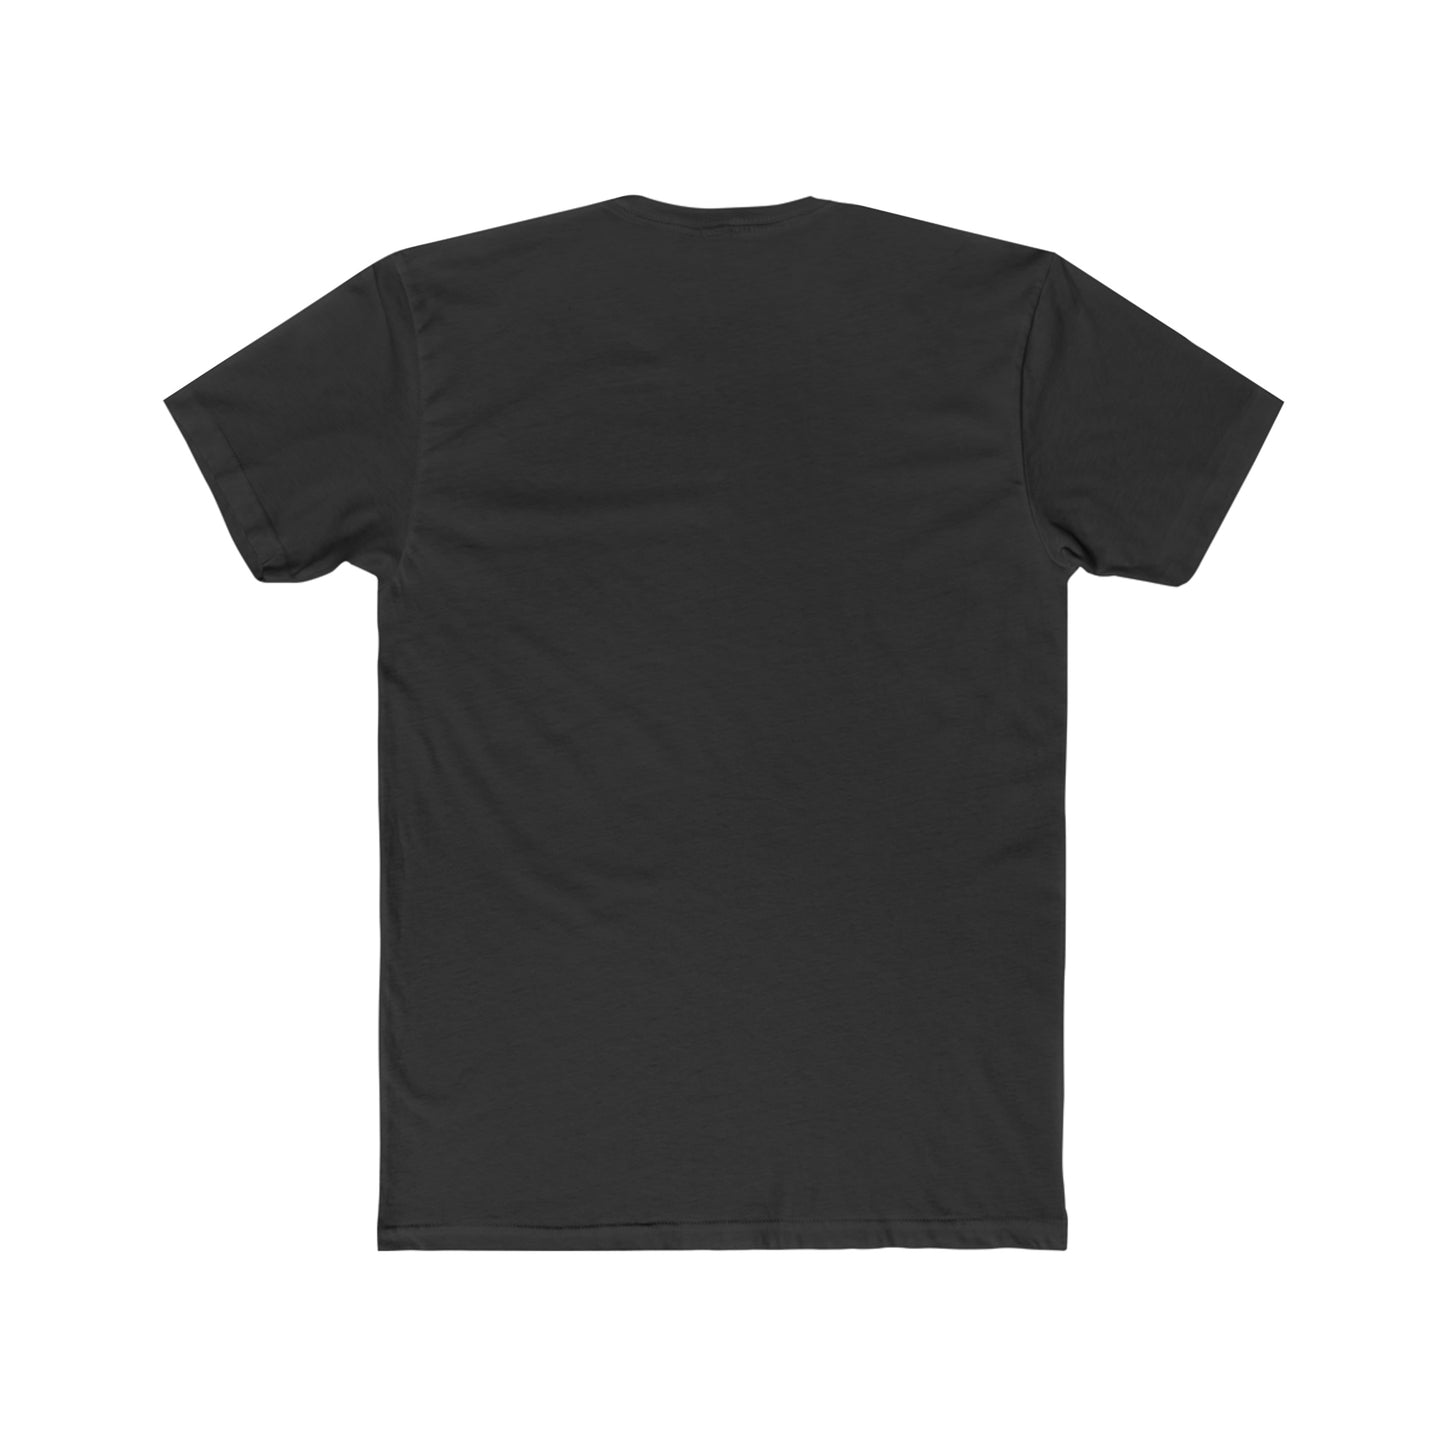 RAISE YOUR VIBE:  AR-Enhanced T-Shirt